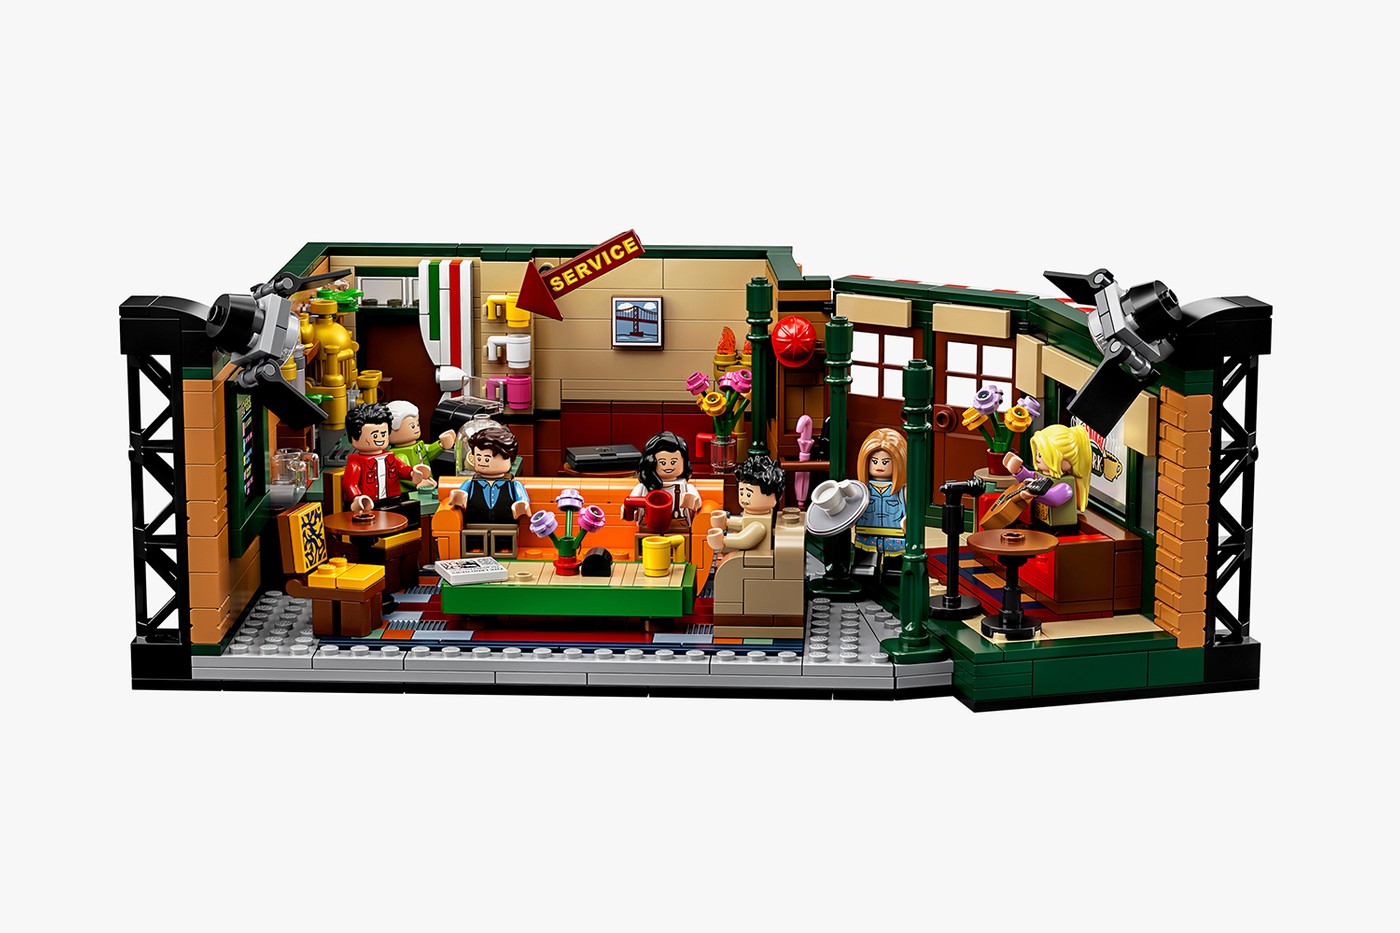 Serial „Przyjaciele” obchodzi 25 lecie. Z tej okazji LEGO przygotowało kolekcjonerski zestaw klocków 7 Serial „Przyjaciele” obchodzi 25-lecie. Z tej okazji LEGO przygotowało kolekcjonerski zestaw klocków